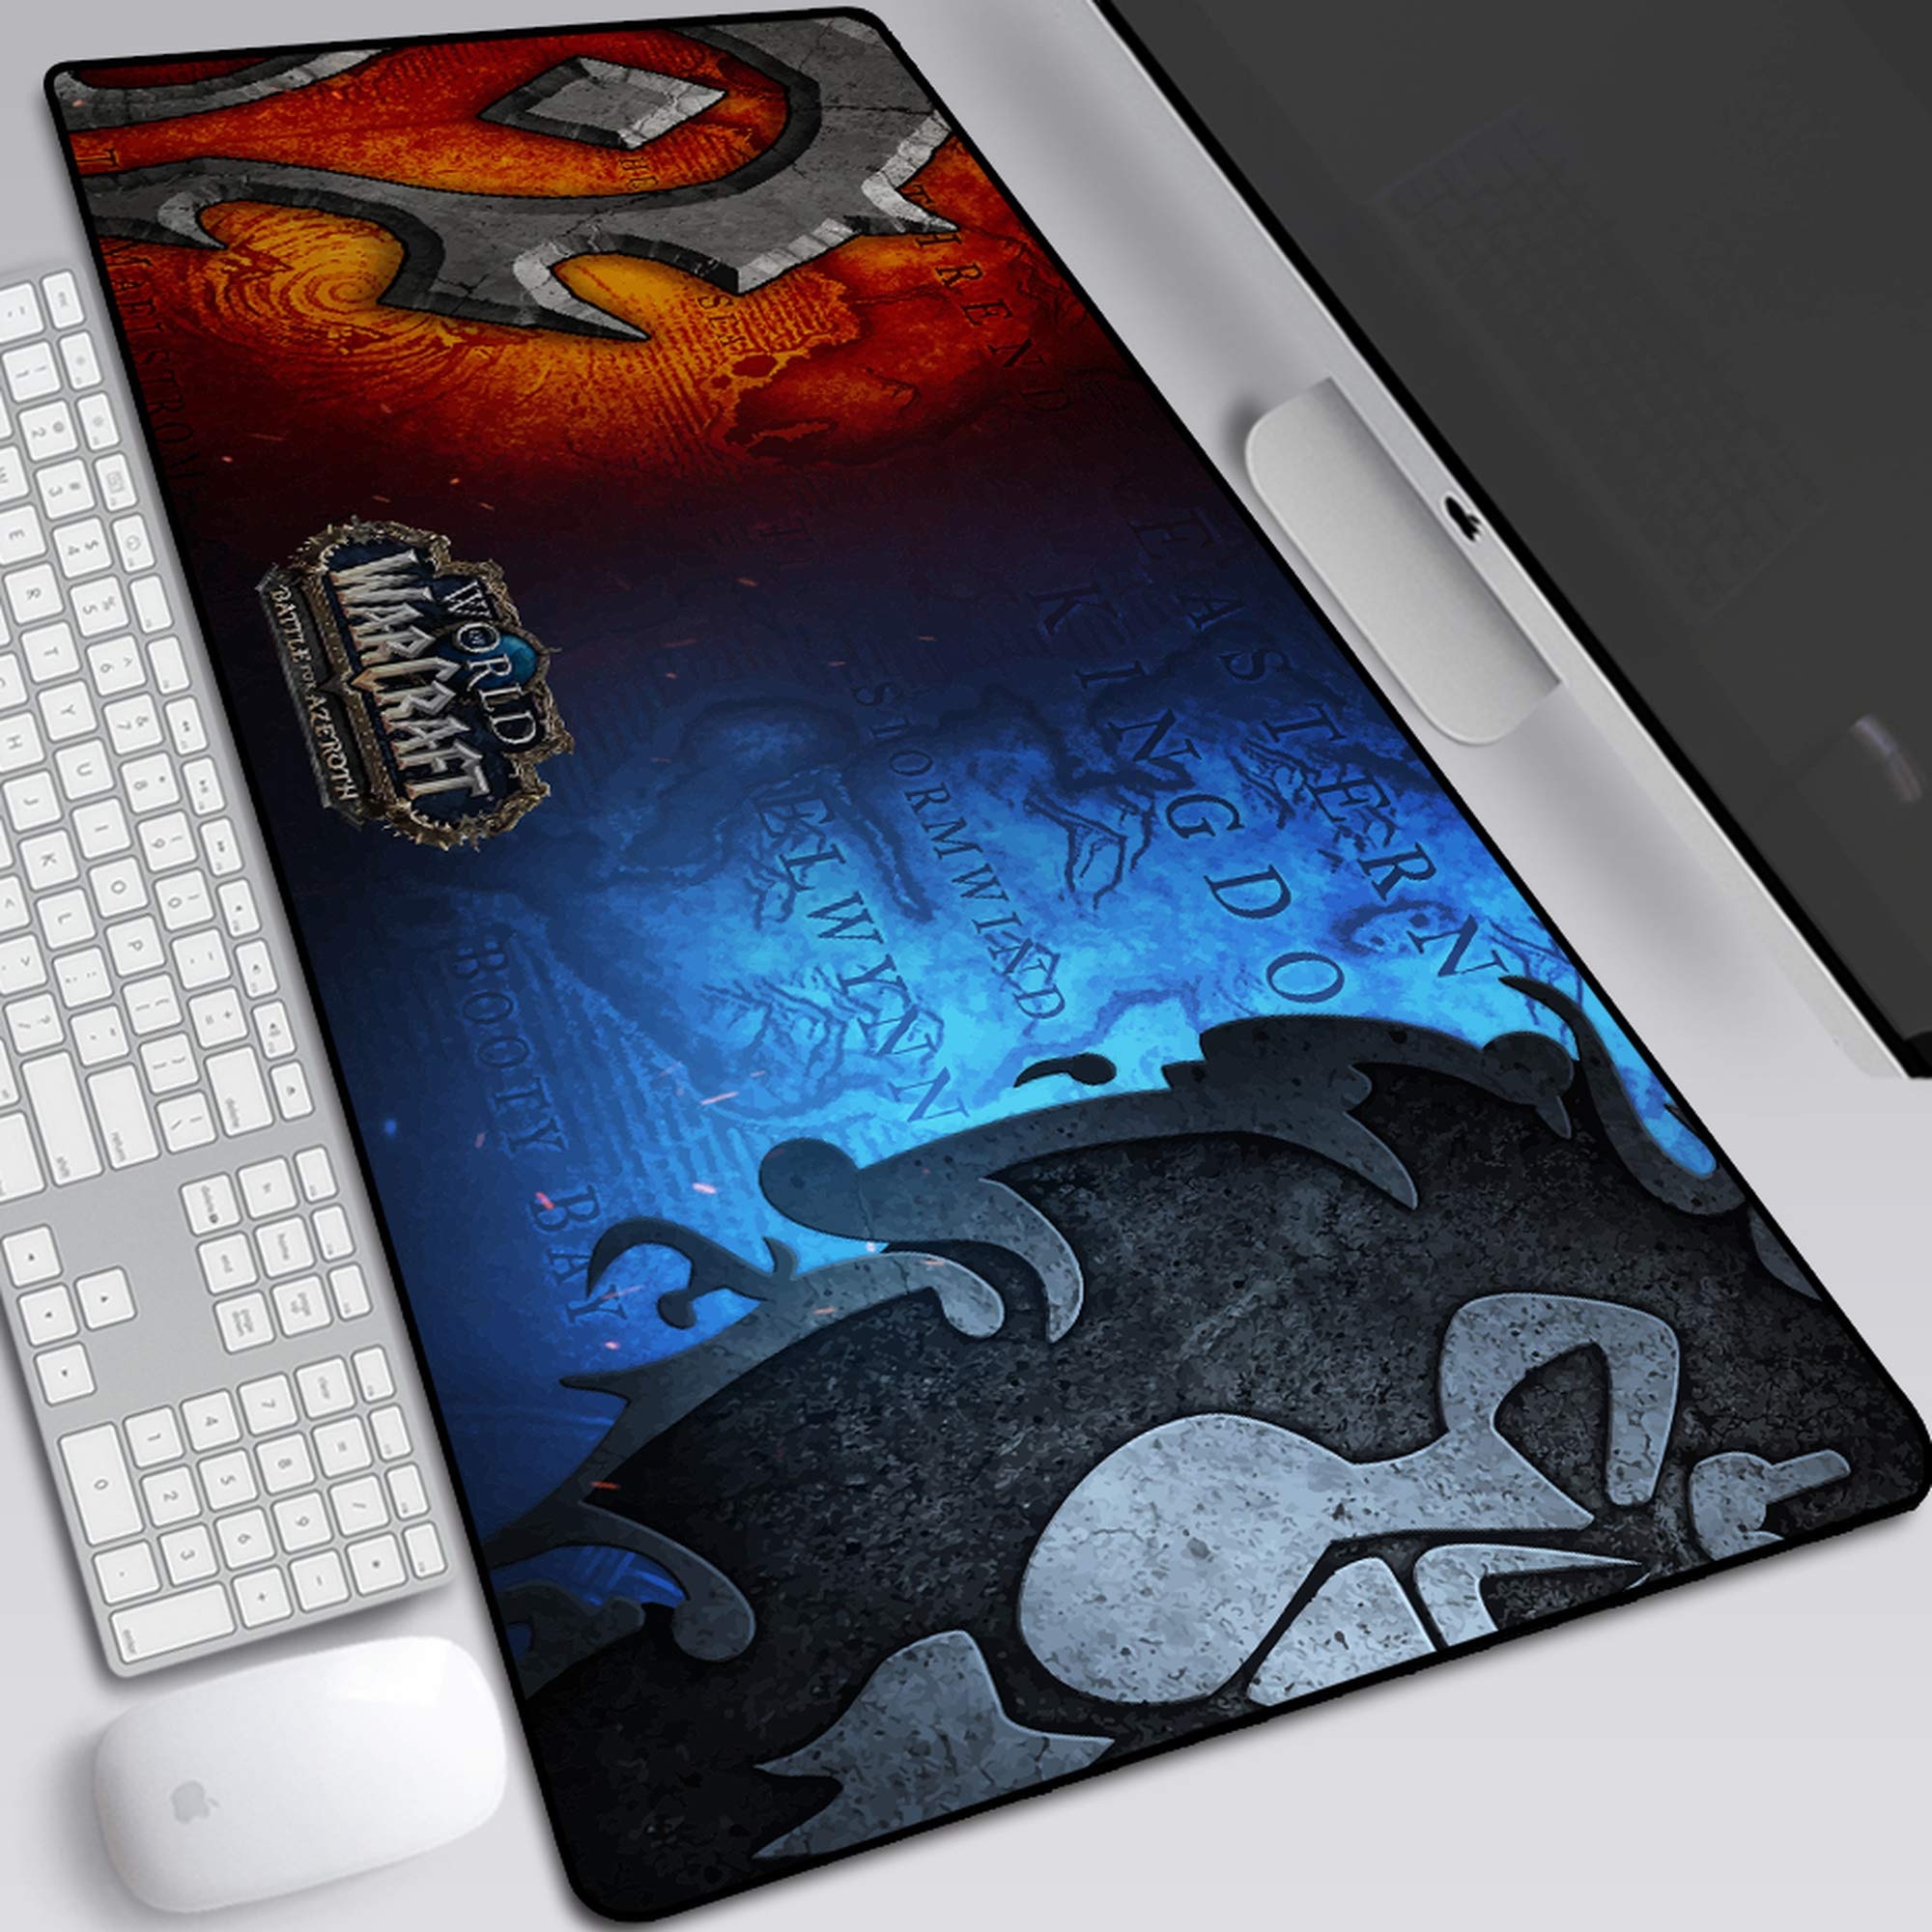 BILIVAN World of Warcraft Battle um Azeroth Mauspad, übergroße Tastatur, rutschfest, 800 x 300 x 3 mm, 3 Stück